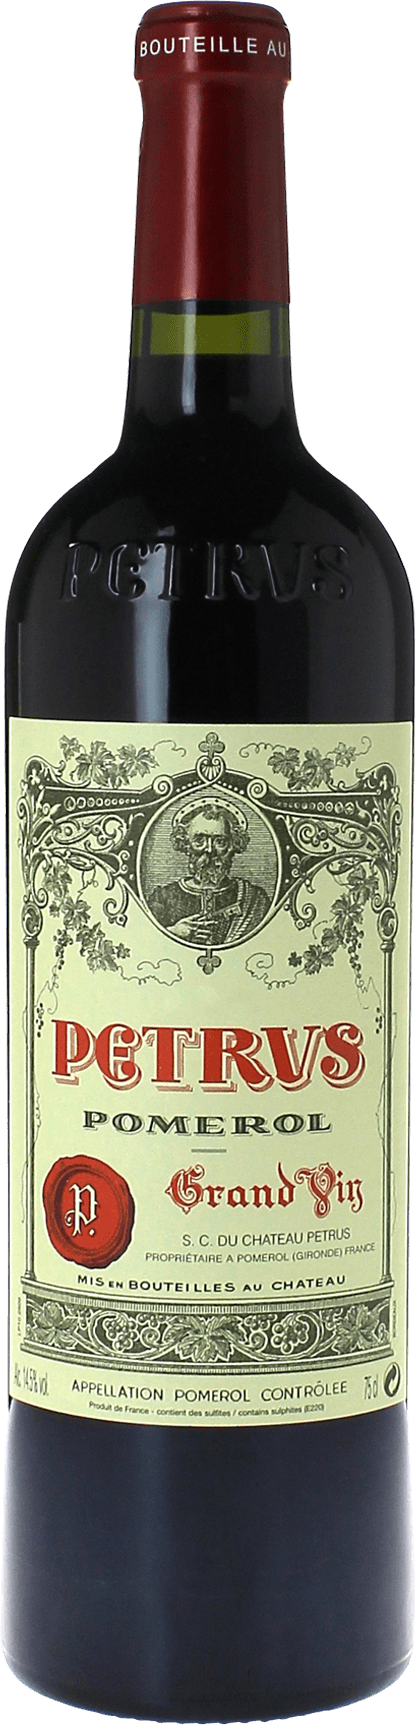 Petrus 2018  Pomerol, Bordeaux rouge